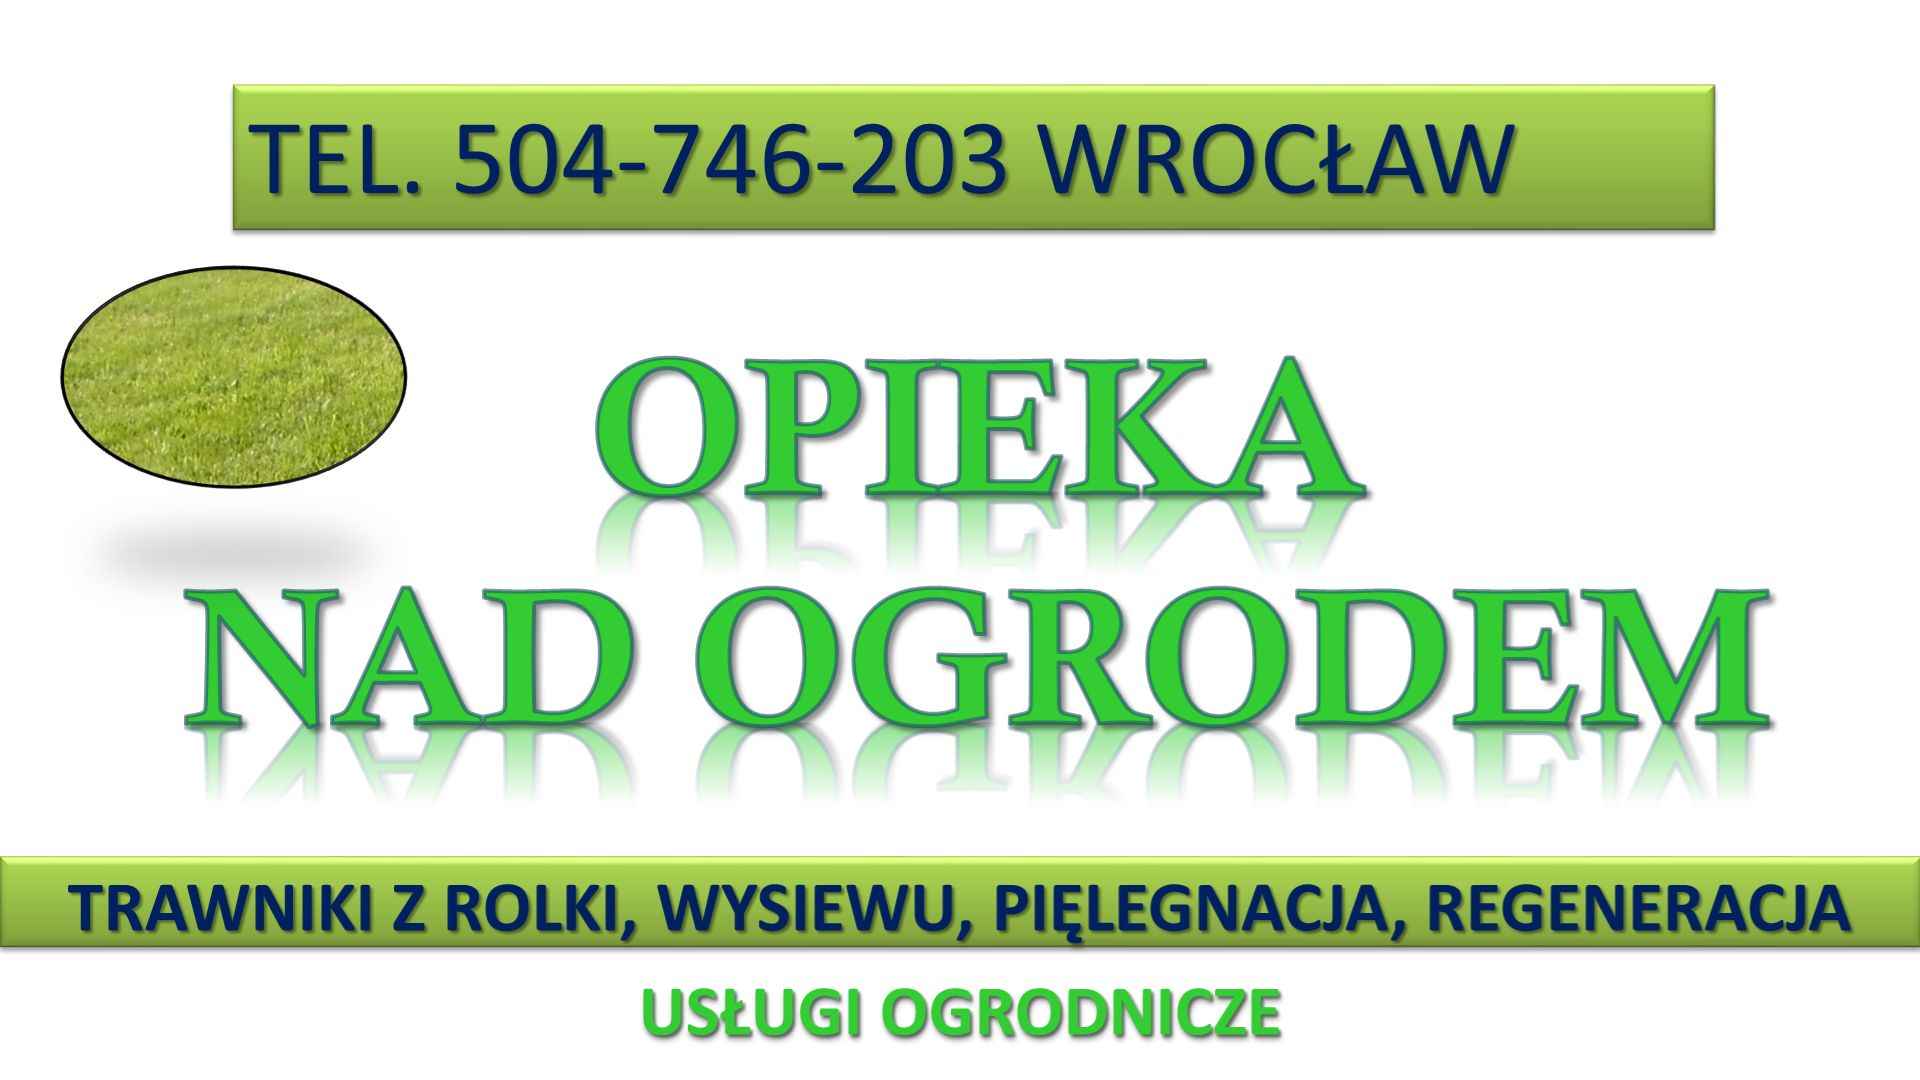 Zakładanie trawnika cena tel. 504-746-203, Wrocław. Trawnik z rolki. Psie Pole - zdjęcie 4